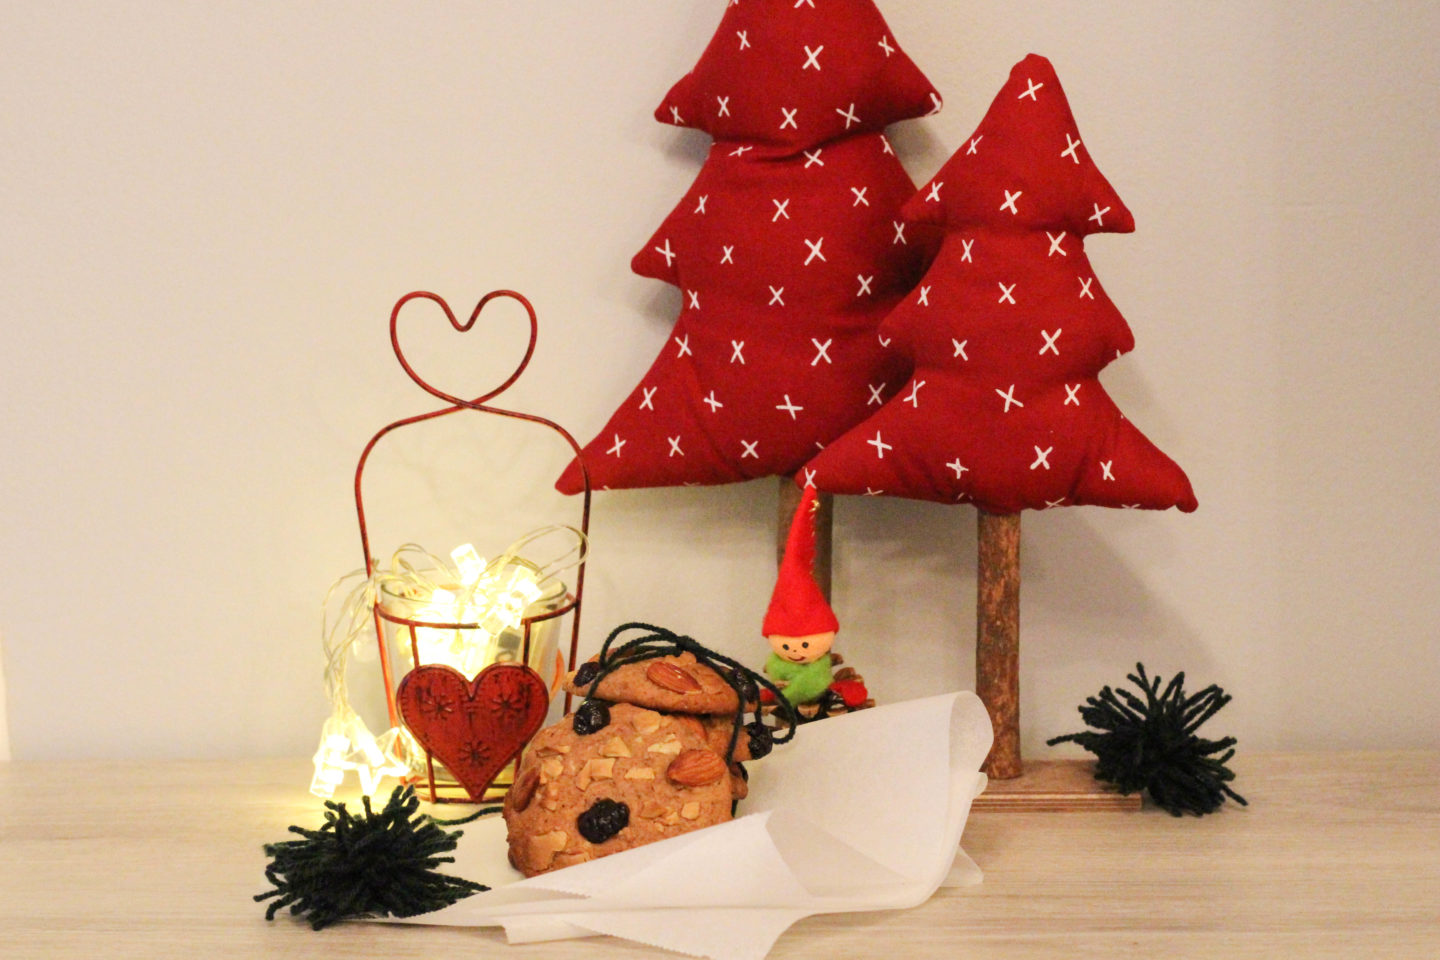 vegane-cookies-schokolade-cranberrys-weihnachten-christmas-1-von-1-8